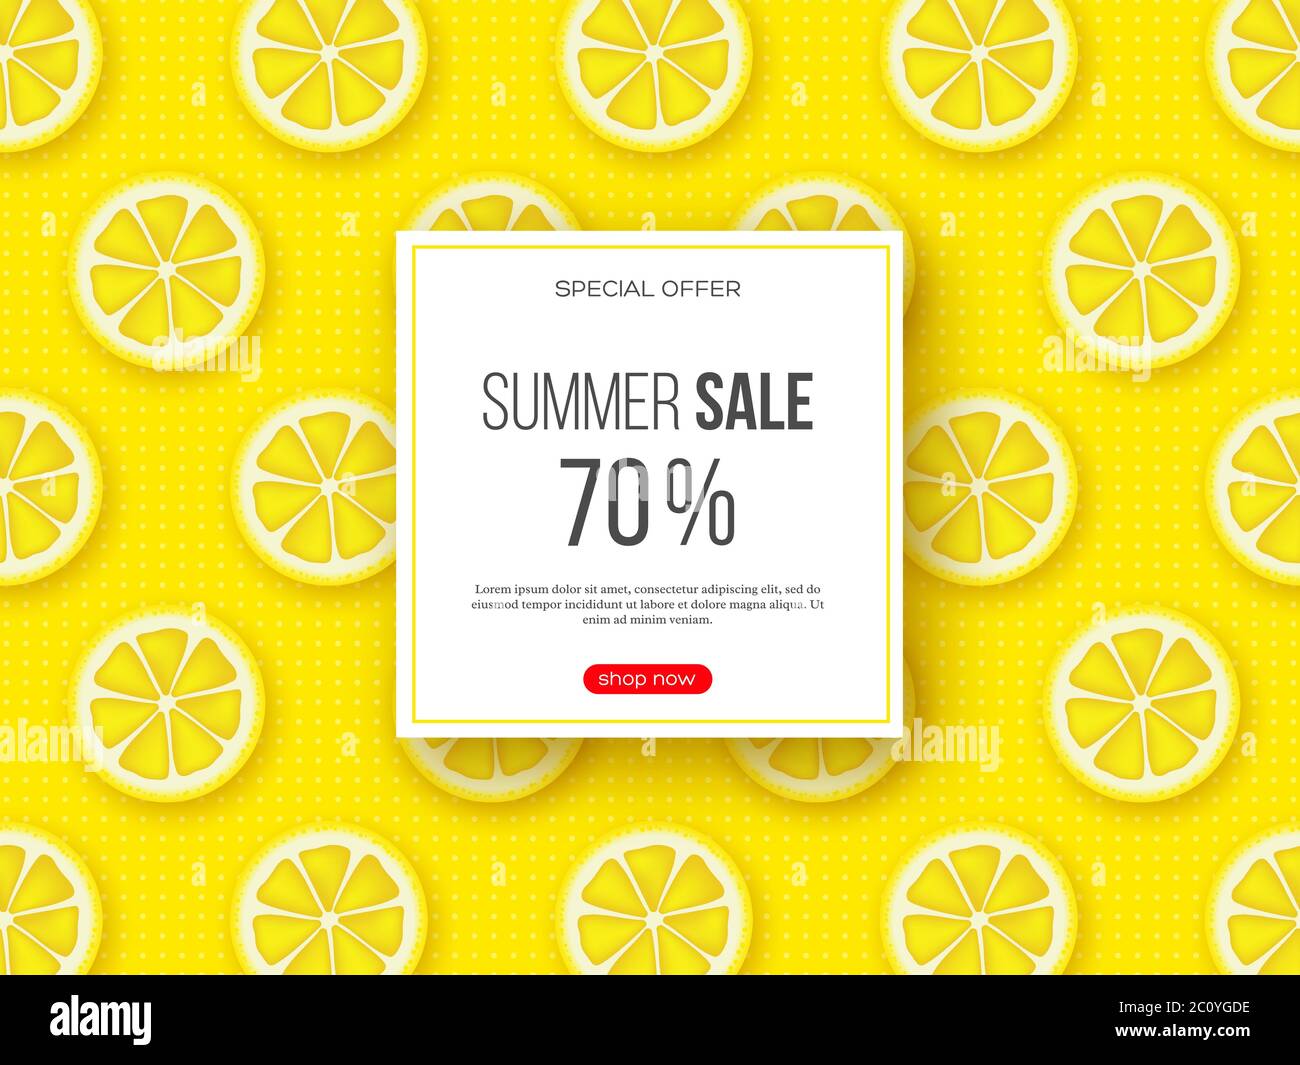 Sommer-Sale-Banner mit geschnittenen Zitronenstücken und gepunkteten Muster. Gelber Hintergrund - Vorlage für saisonale Rabatte, Vektor-Illustration. Stock Vektor